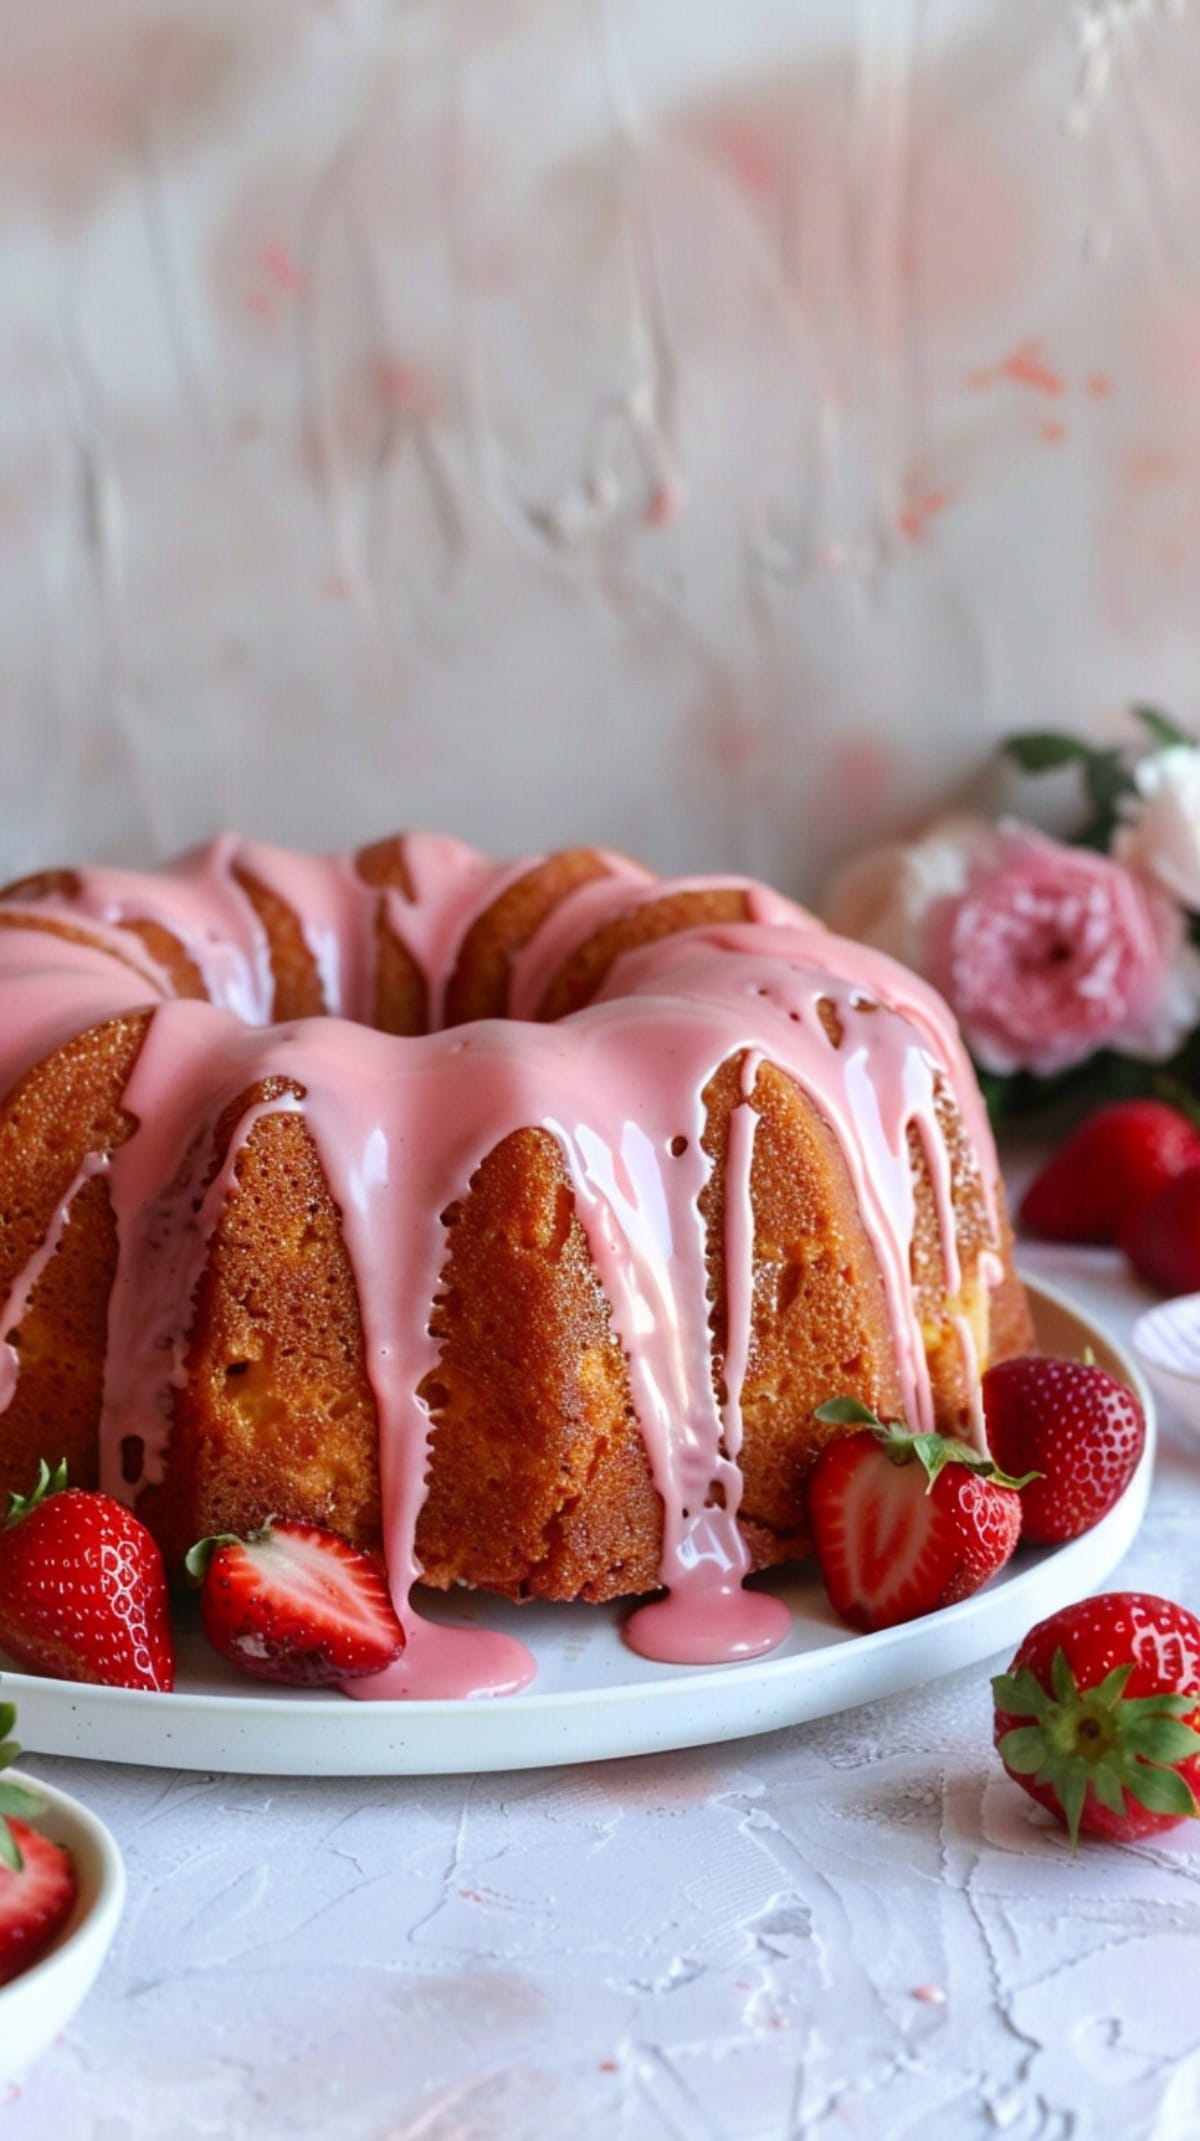 Strawberry Glazed Bundt Cake with Fresh Strawberries